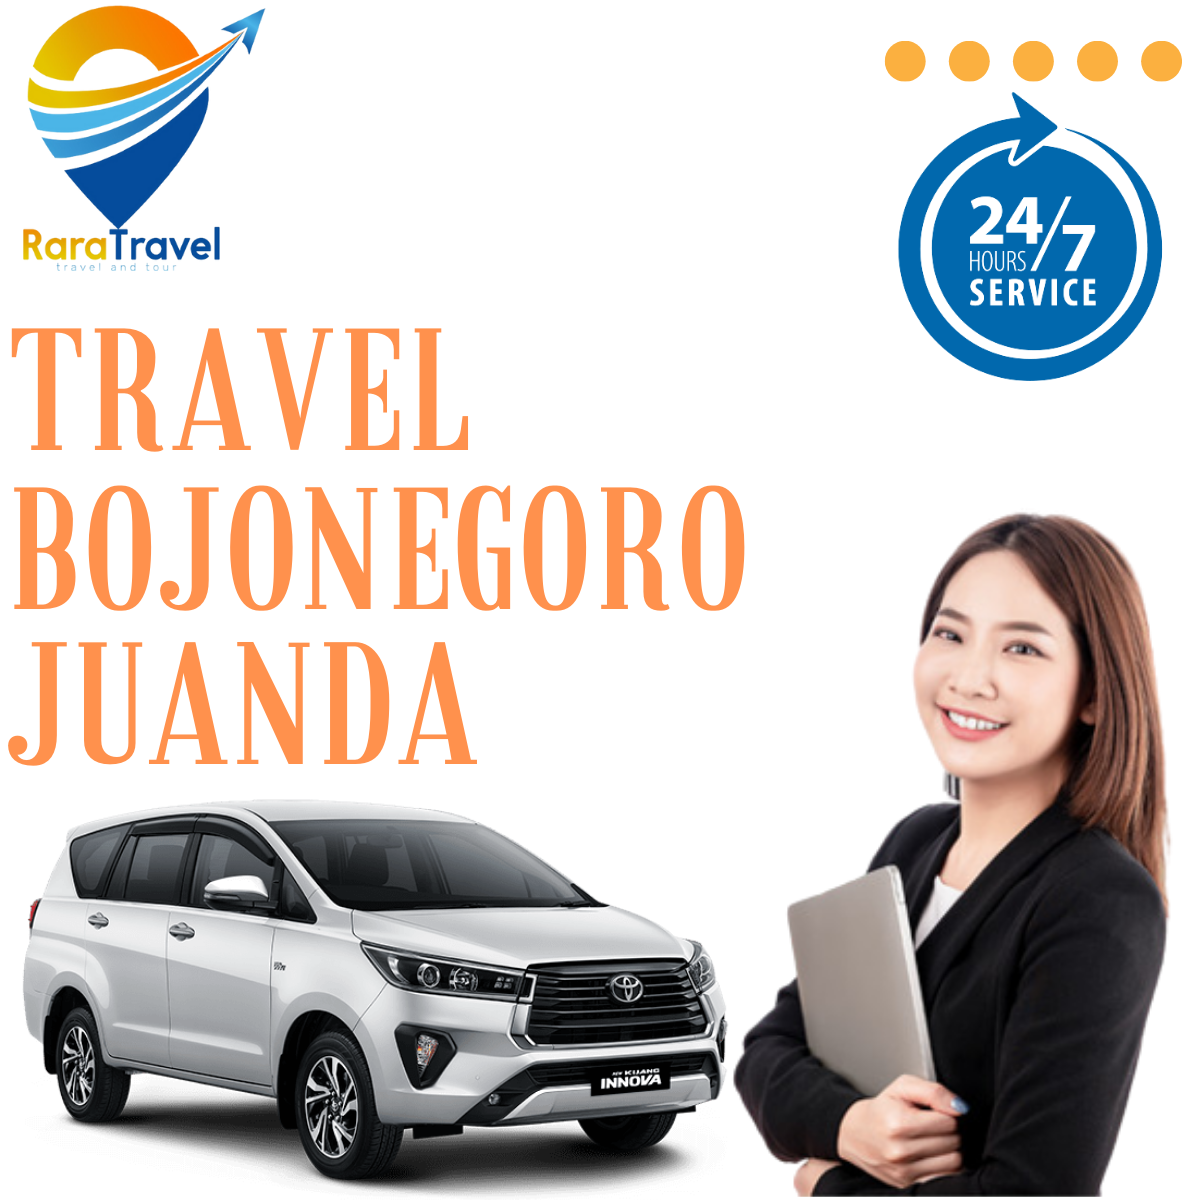 Travel Bojonegoro ke Bandara Juanda Murah PP Layanan 24 Jam - RARATRAVEL.ID